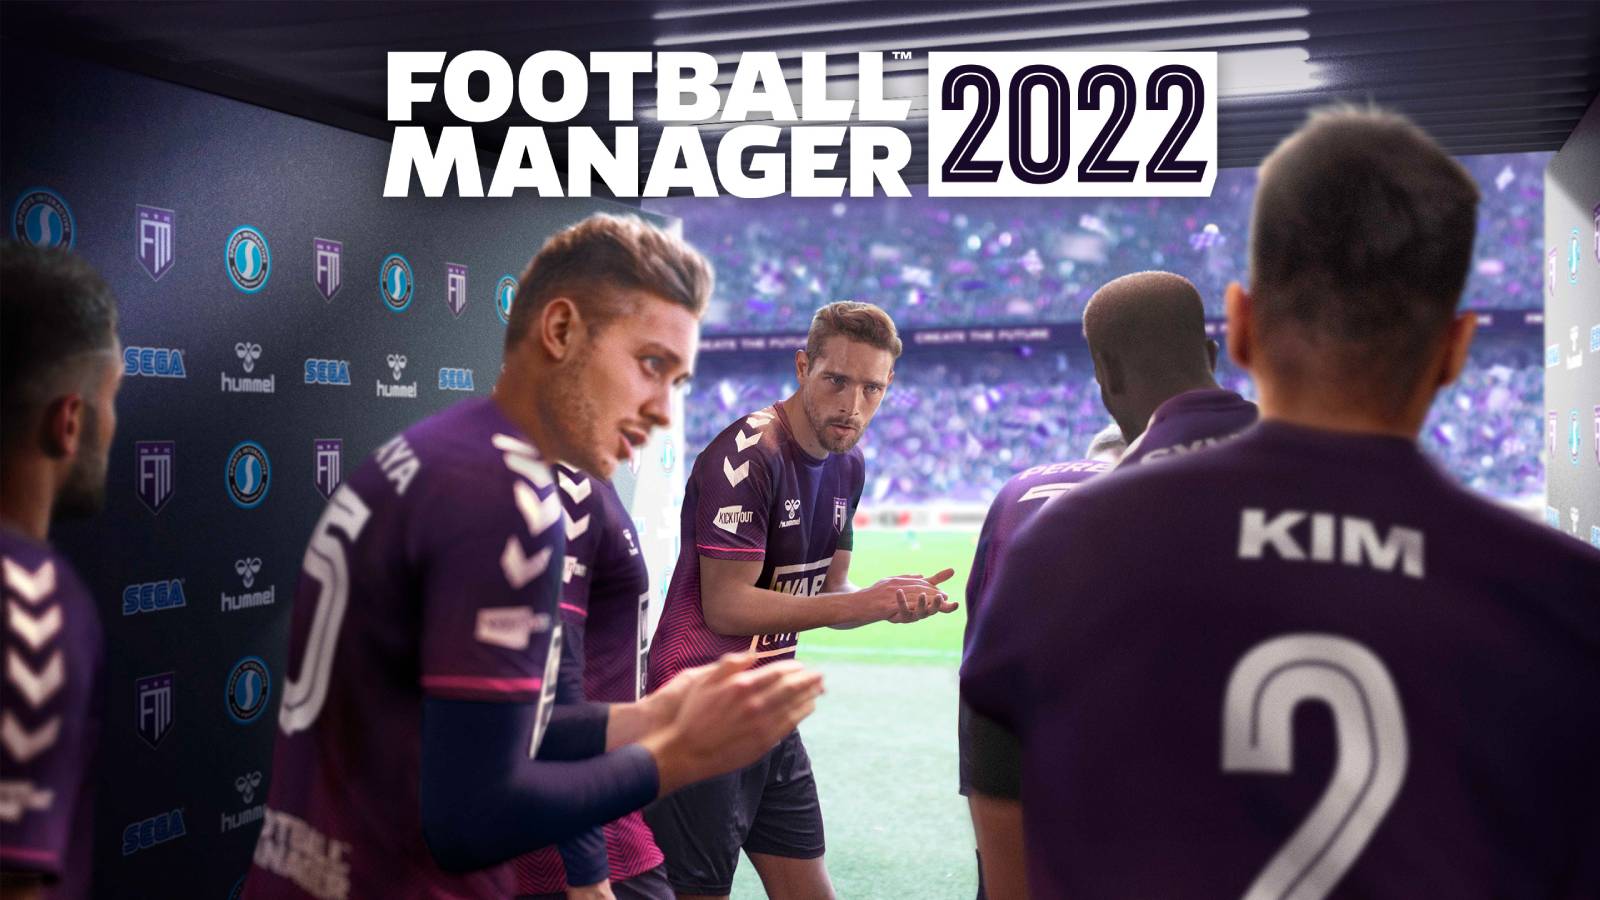 Football Manager 2022 продан миллионом копий по всему миру через Gamepass и другие платформы